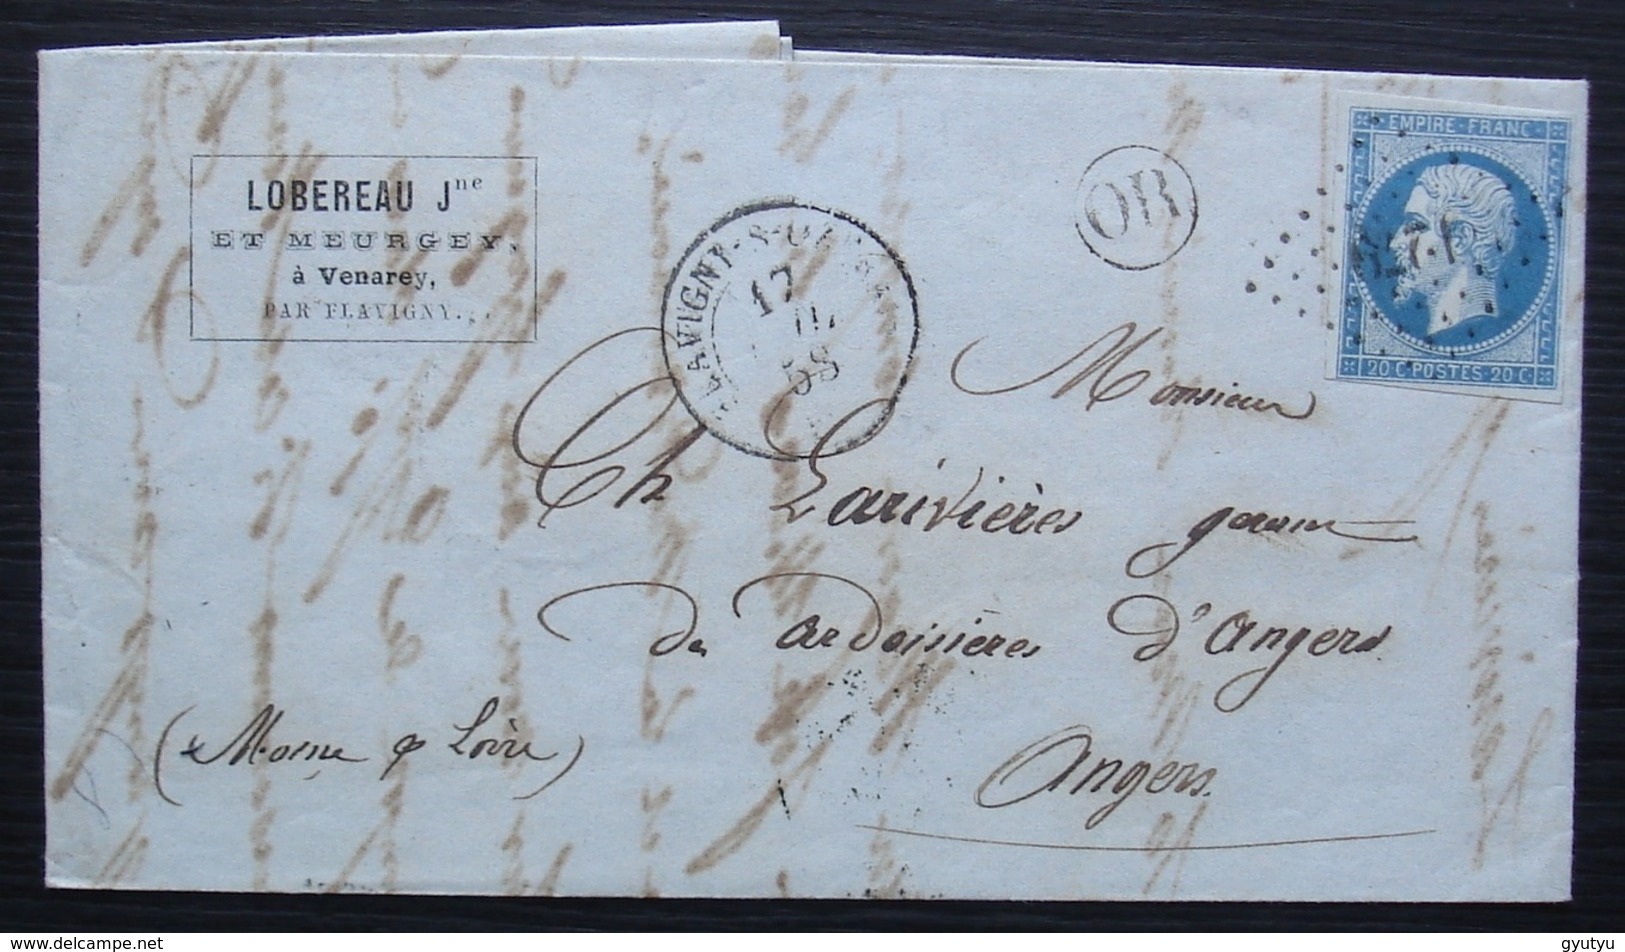 Venarey 1858 Origine Rurale Cad De Flavigny Sur Ozerain Lettre De Lobereau Et Meurcey Ciment Romain (gare Des Laumes) - 1849-1876: Période Classique